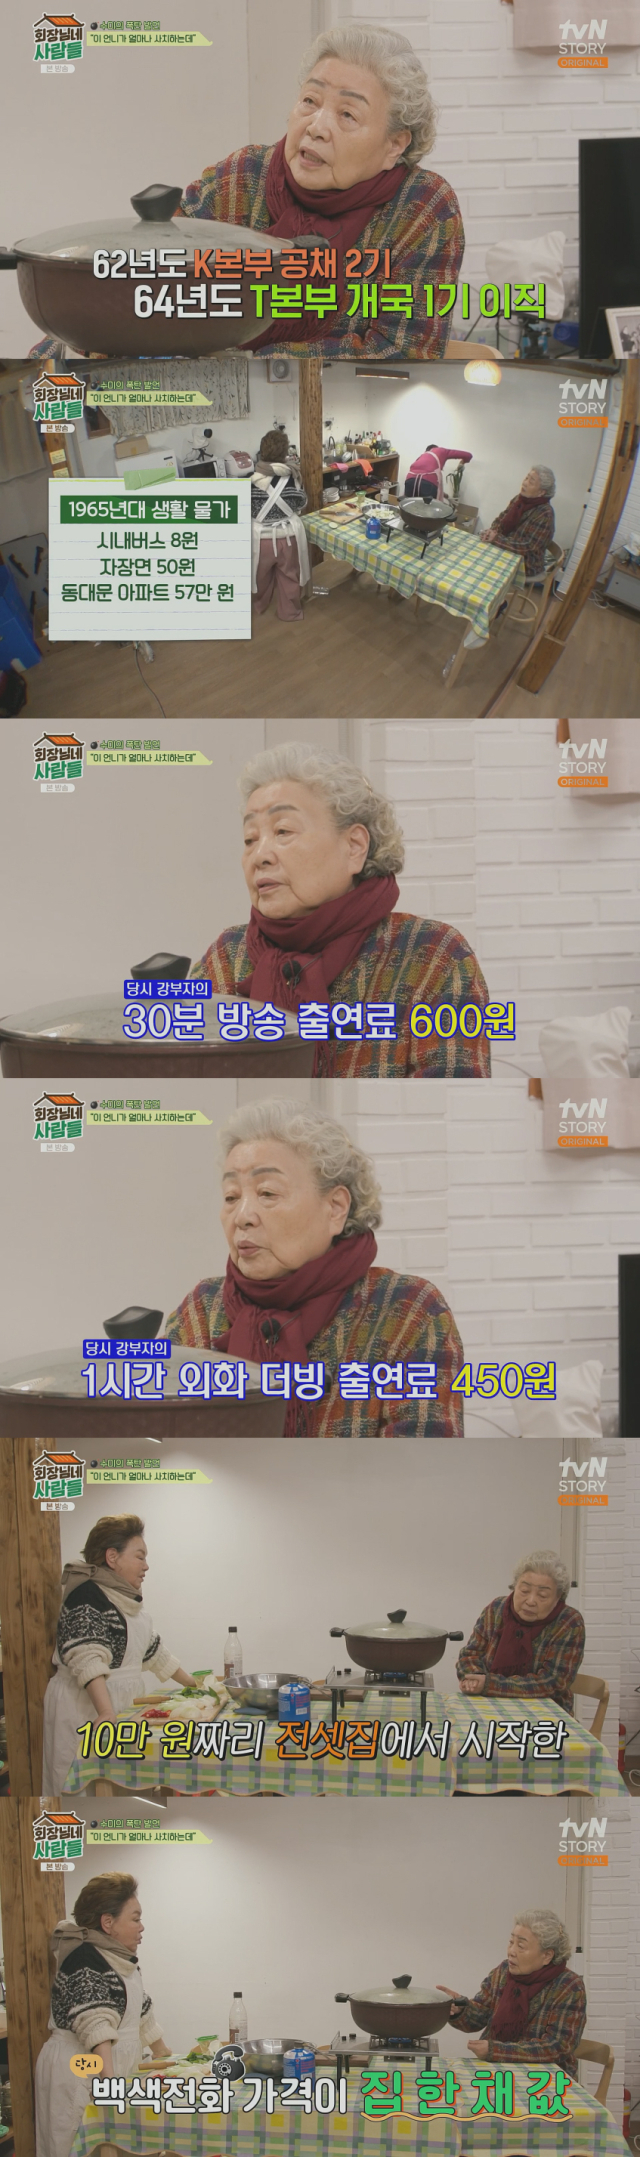 재력을 공개한 배우 강부자./케이블채널 tvN STORY 예능프로그램 '회장님네 사람들' 방송 캡처